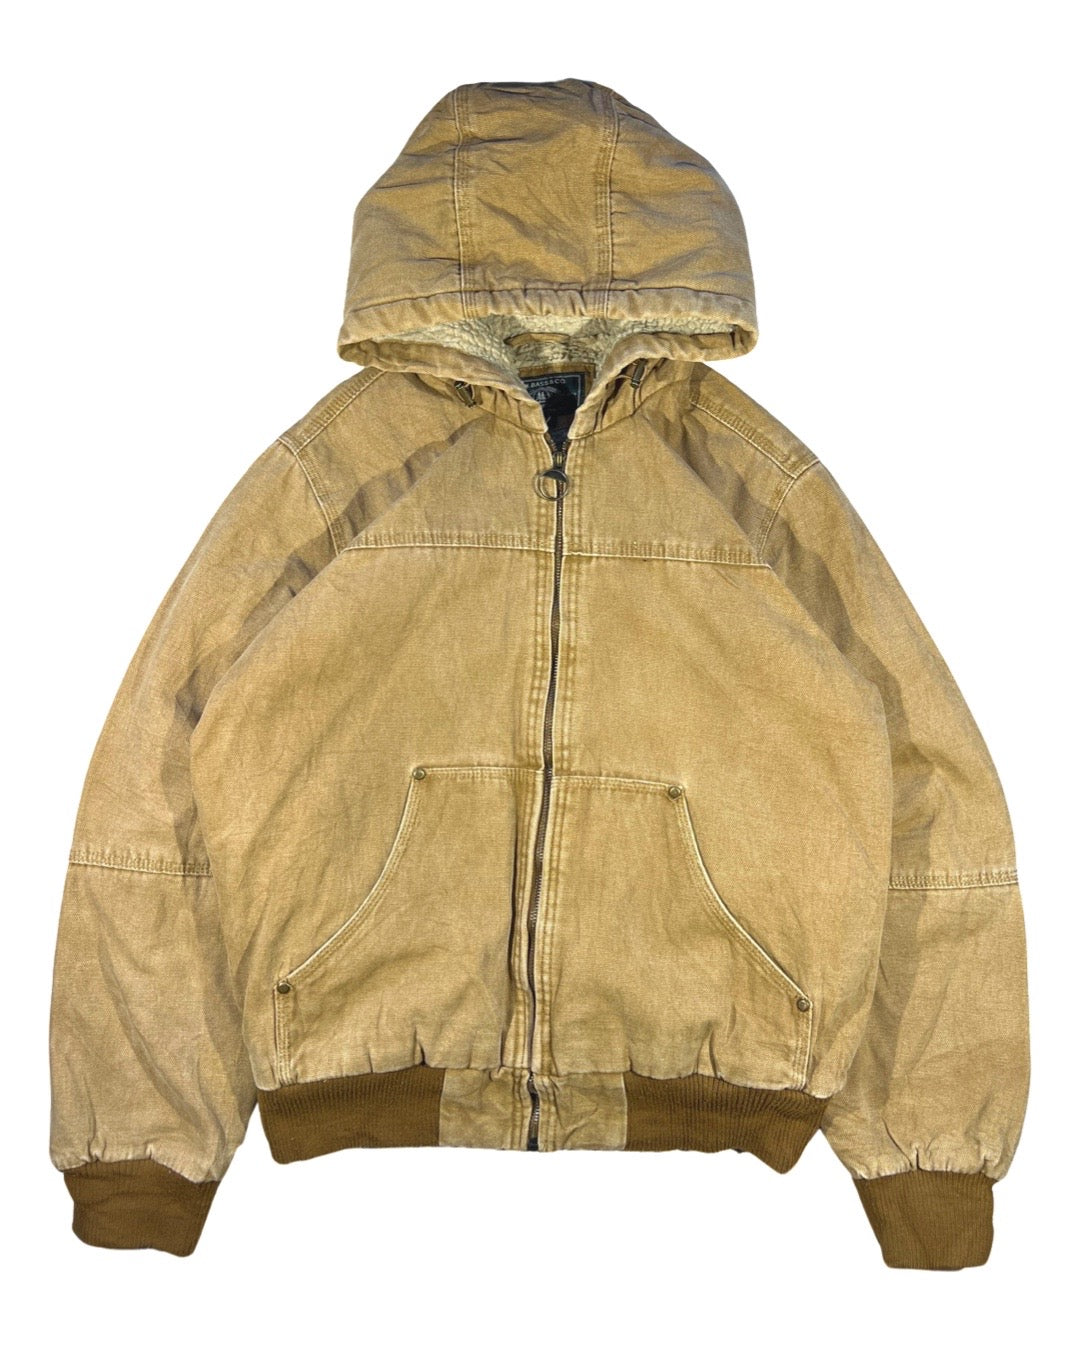 Vintage Hooded Work Jacket - S